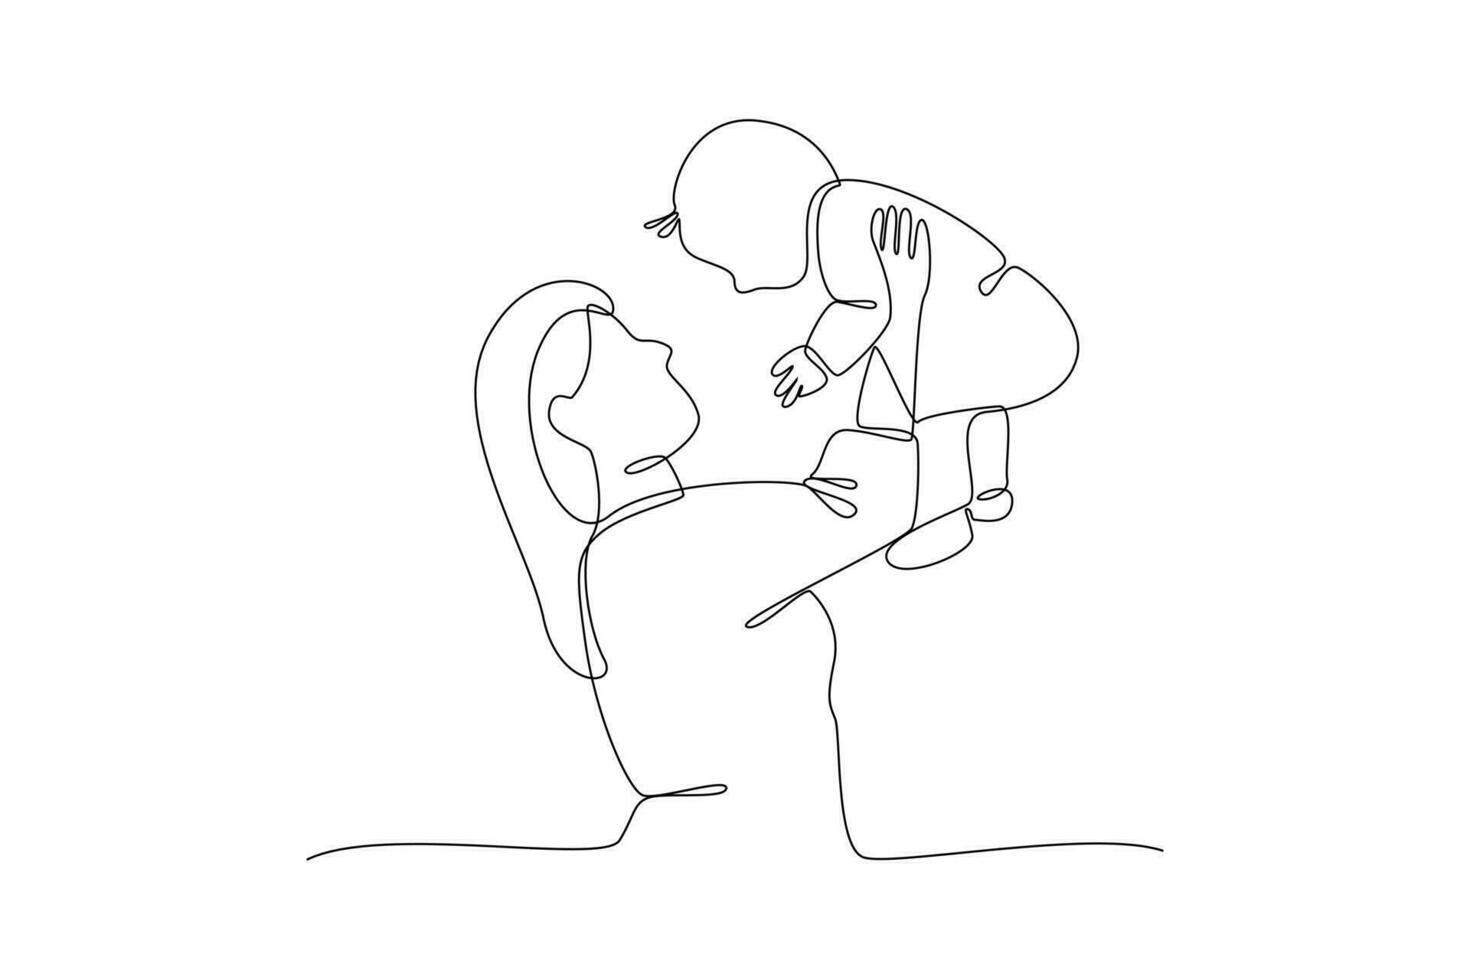 continuo uno línea dibujo padres con bebés. familia maternidad concepto. garabatear vector ilustración.